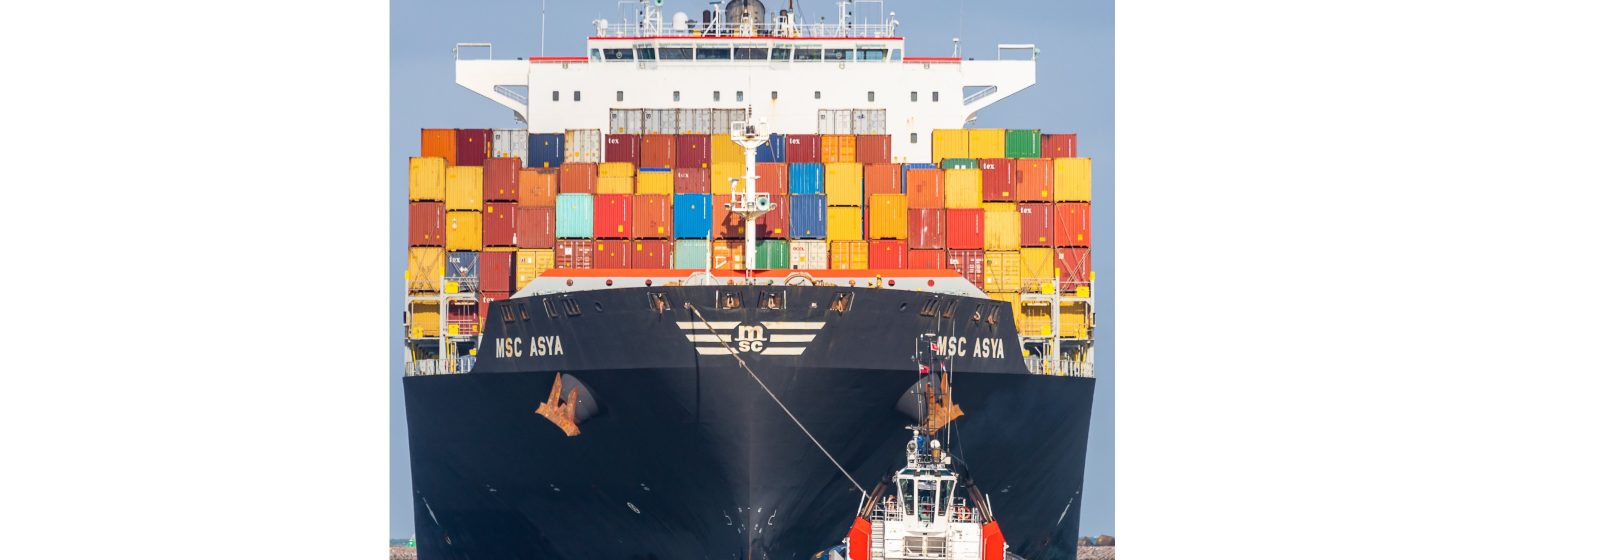 Containerschip 'MSC Asya'